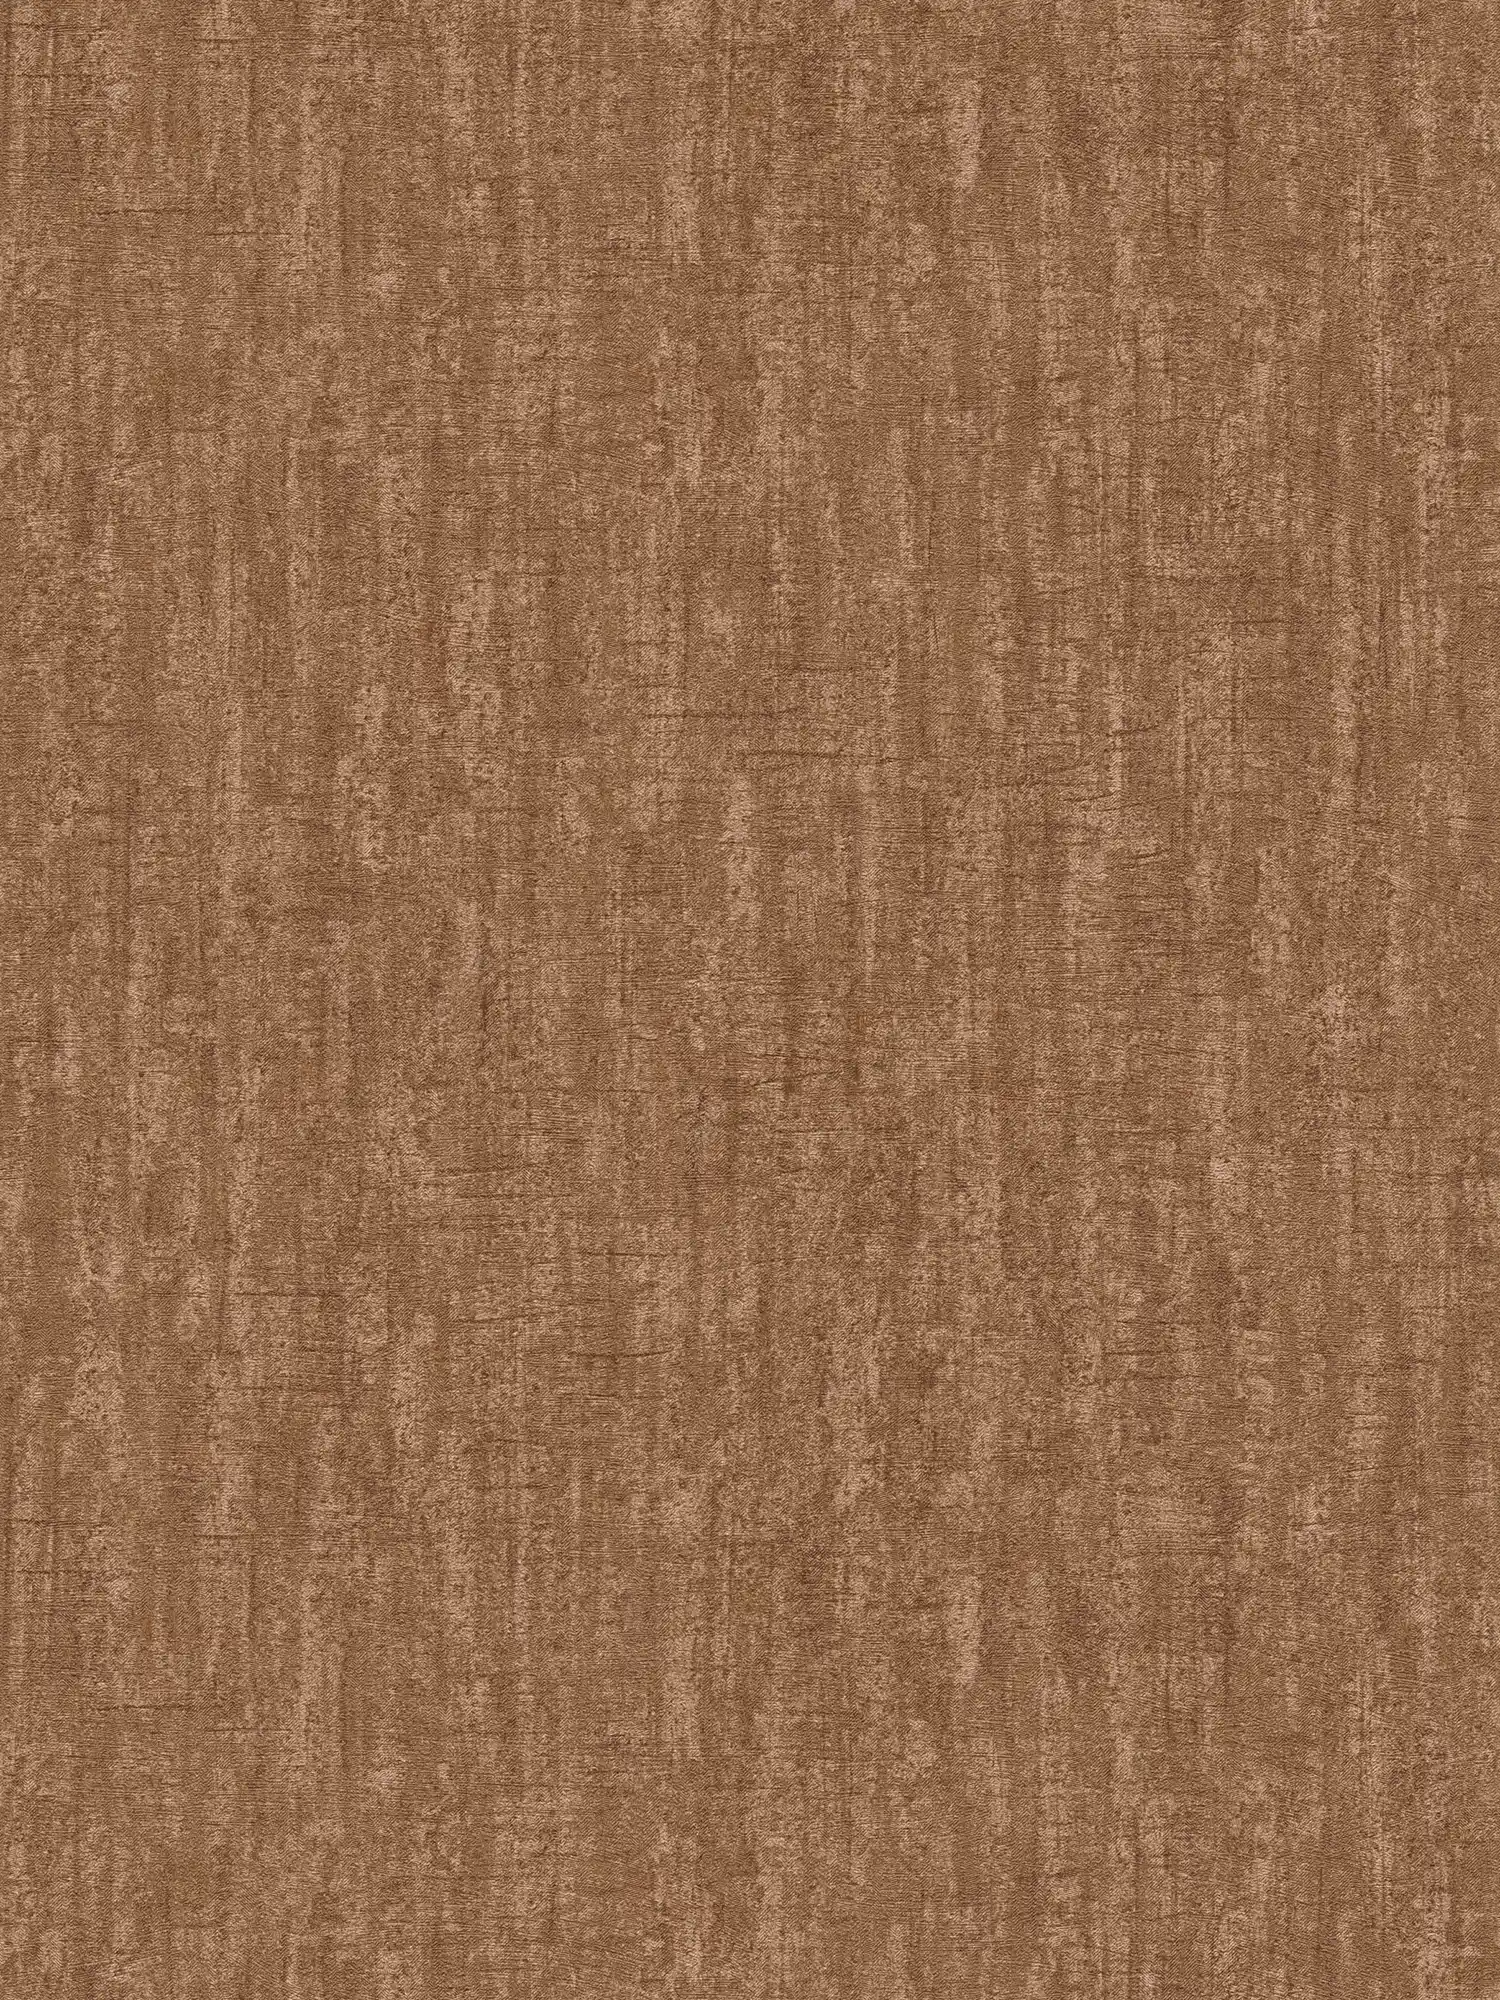 papel pintado marrón óxido moteado, con estructura y efecto brillante - marrón, naranja
